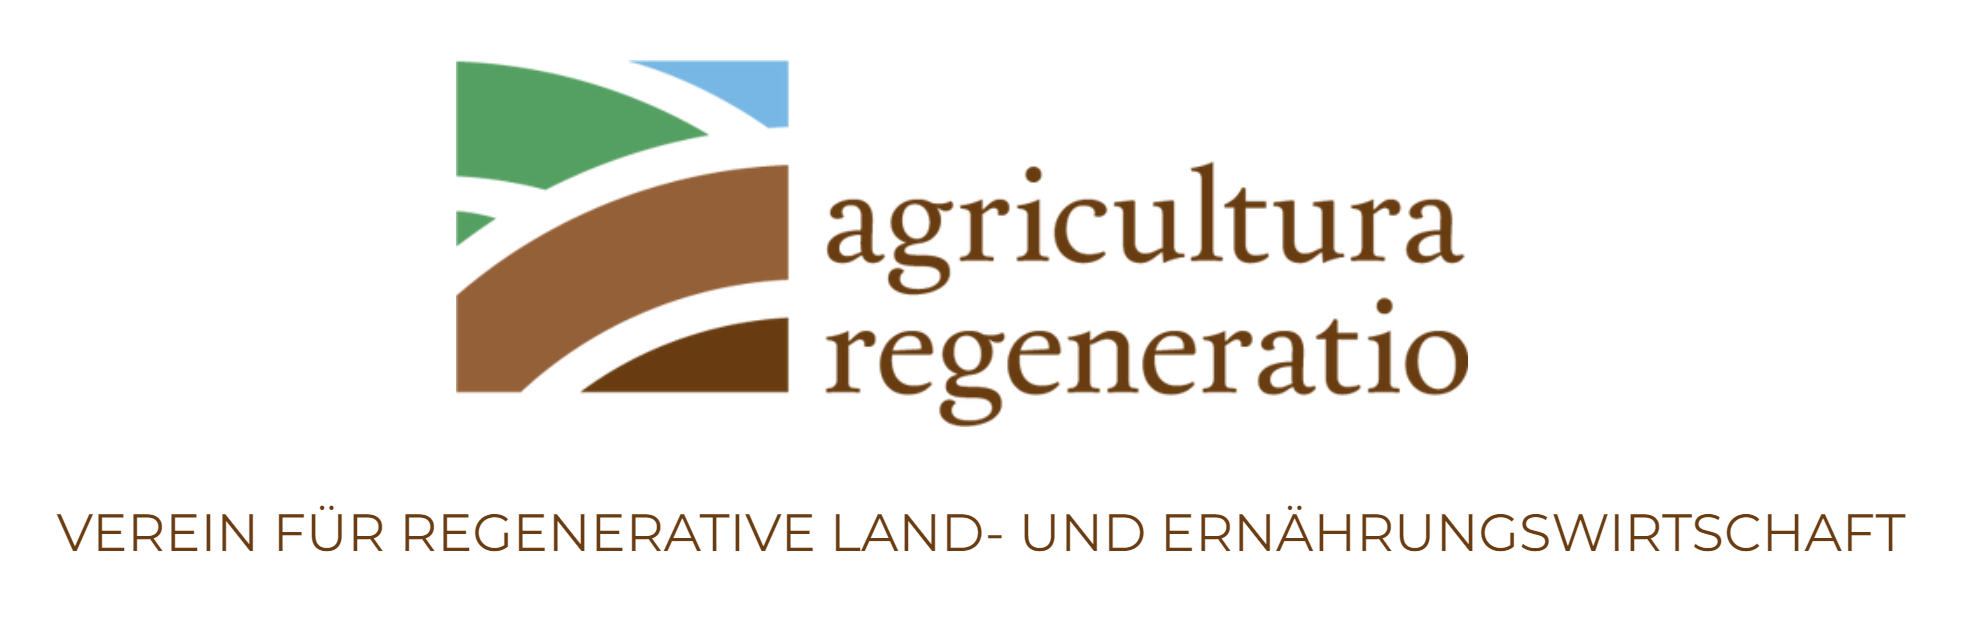 Agricultura Regeneration